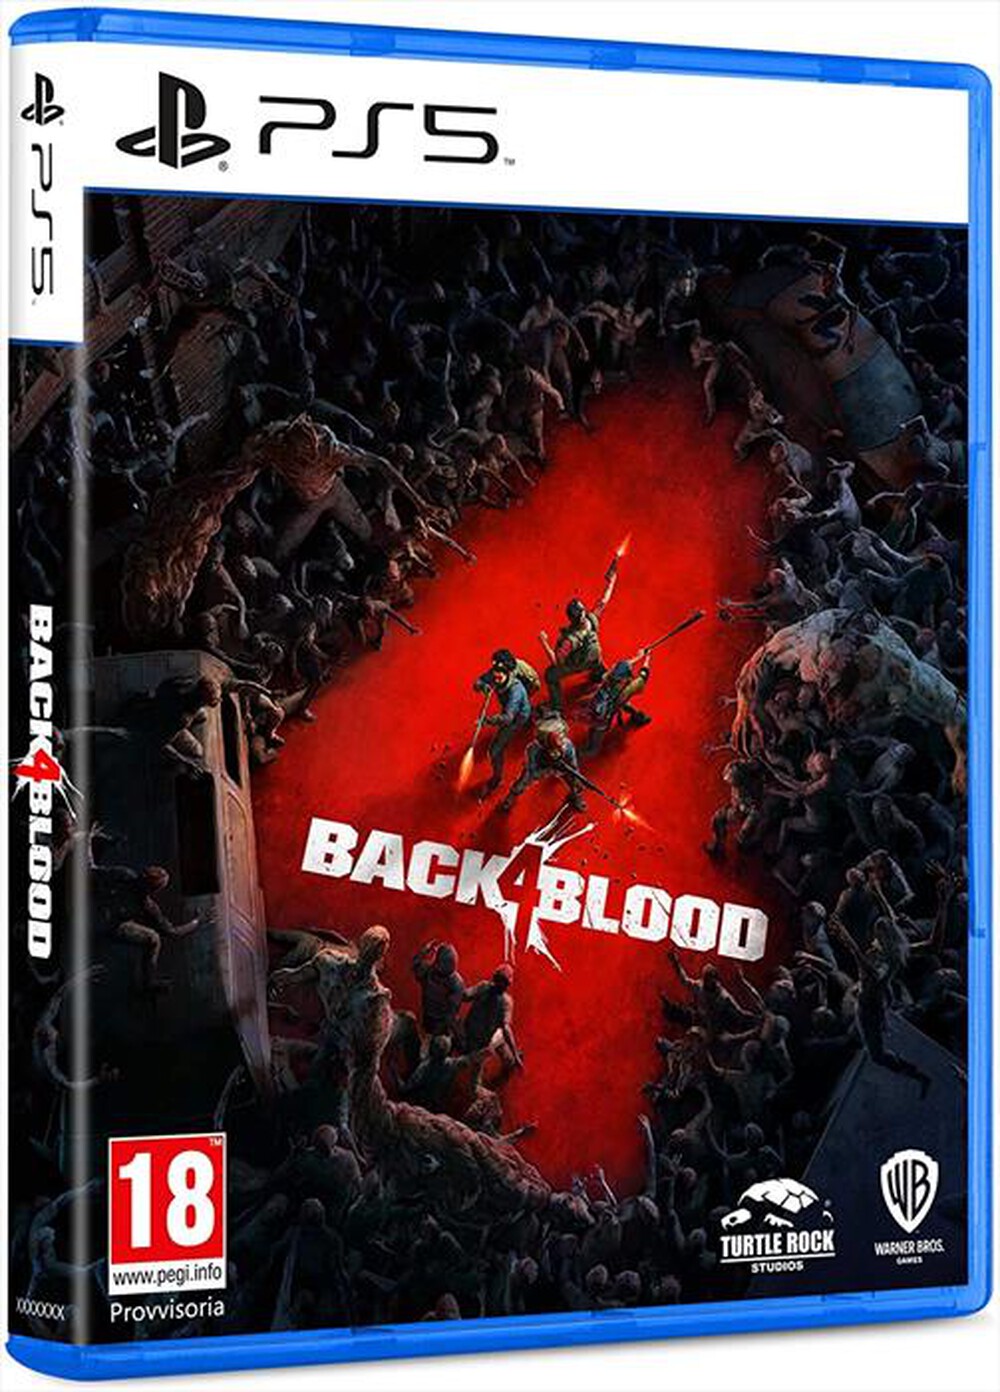 "WARNER GAMES - BACK 4 BLOOD (PS5) - "